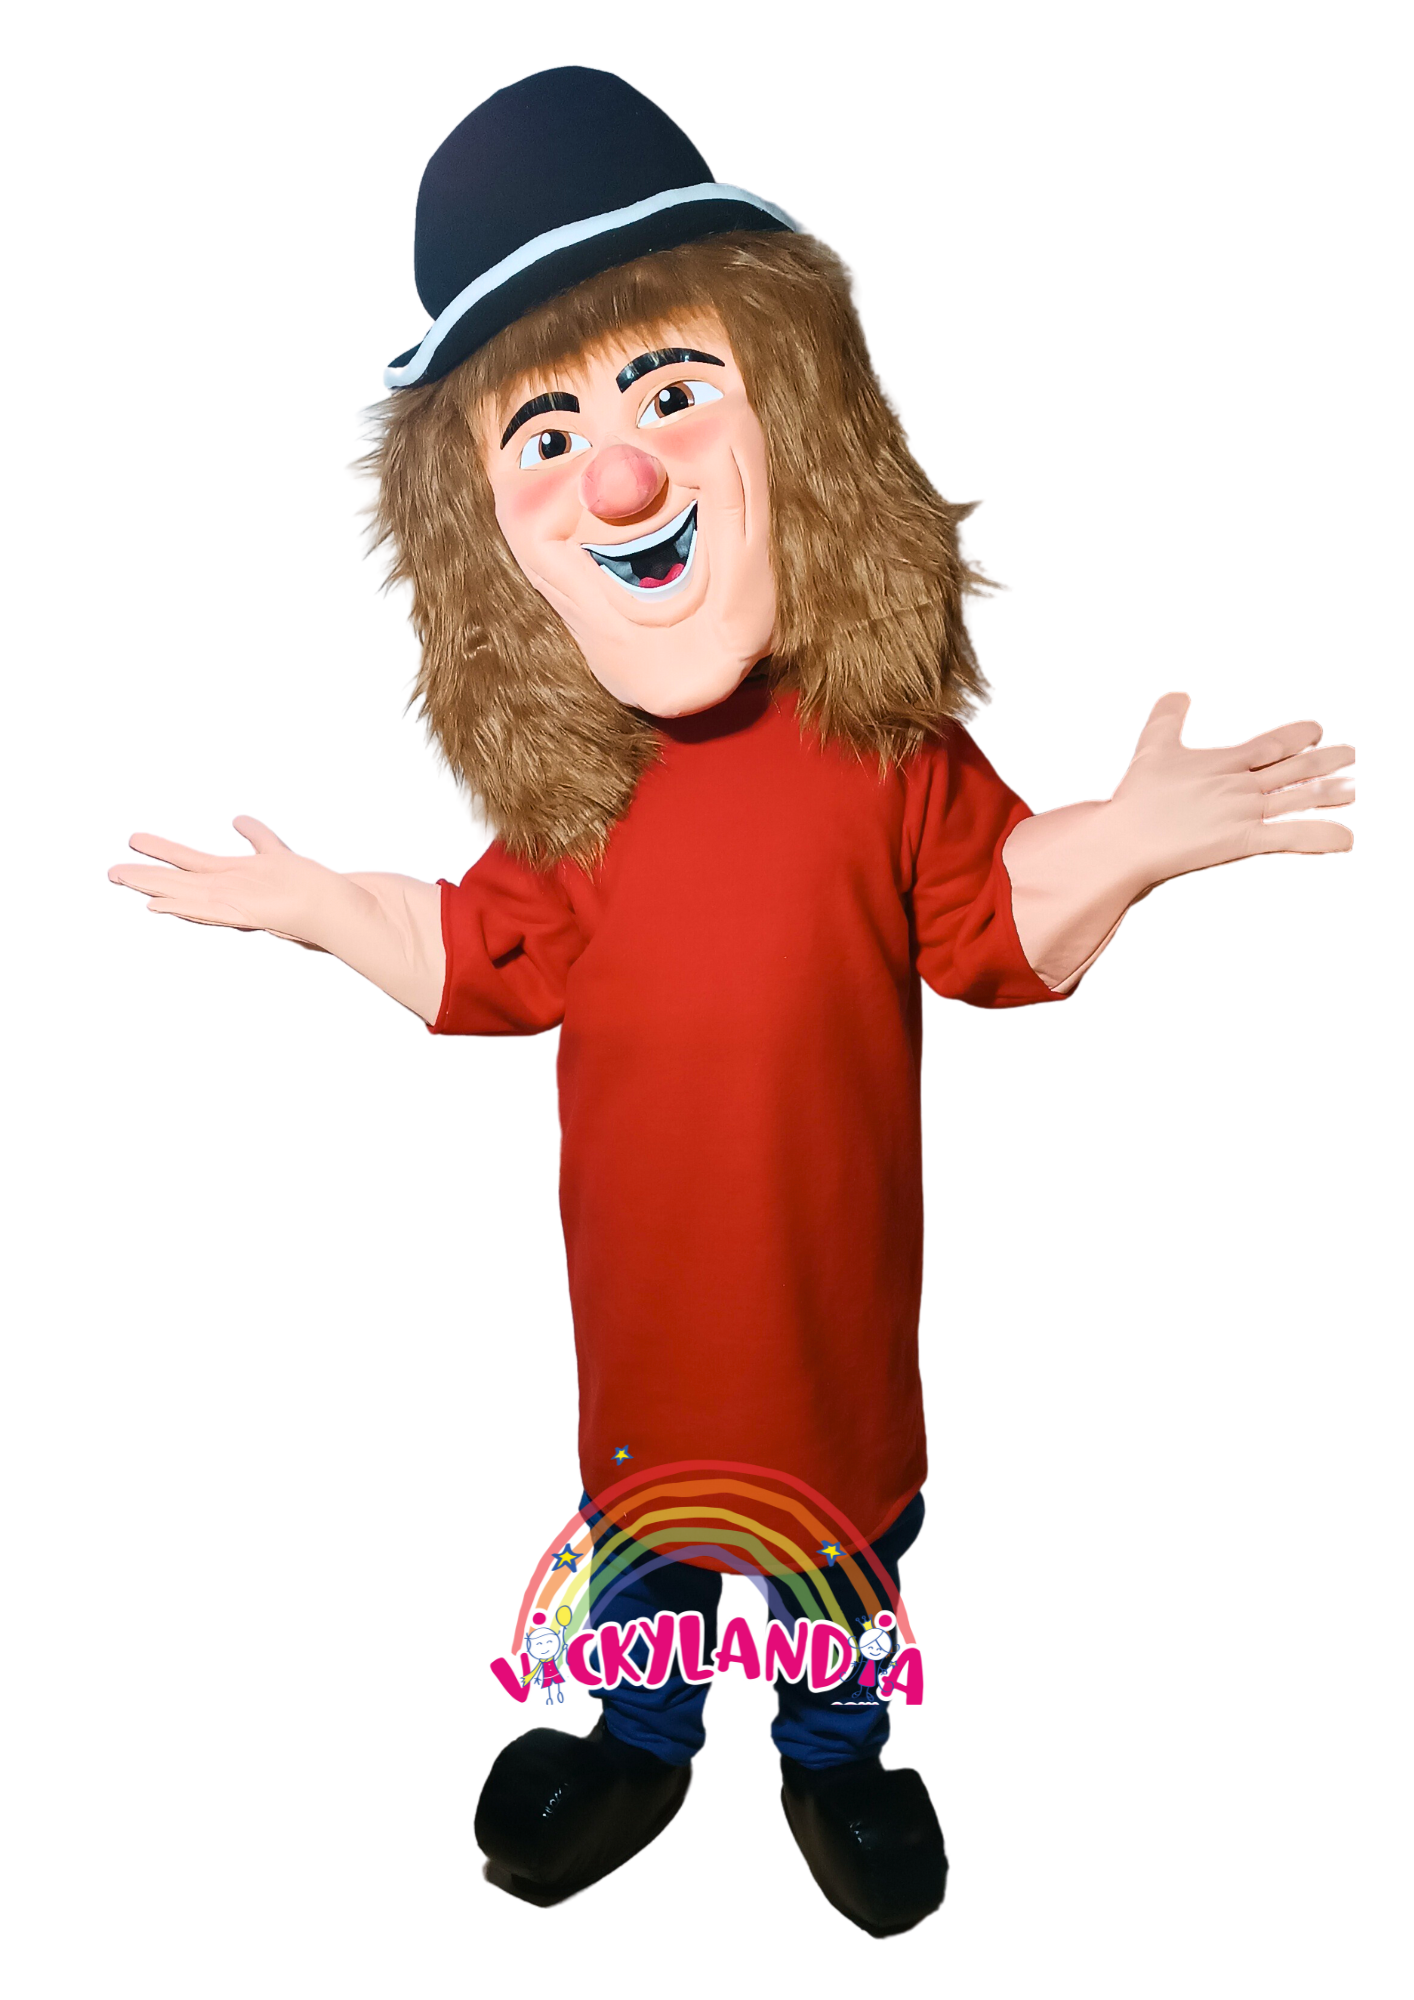 Descubre la magia de nuestro muñeco publicitario de Payaso TV Sombrero Negro en Vickylandia. Son disfraces cabezones perfectos para fiestas infantiles, shows, cumpleaños, estrategias publicitarias, carnavales, fiestas patronales, espectáculos, cabalgatas y cualquier tipo de evento